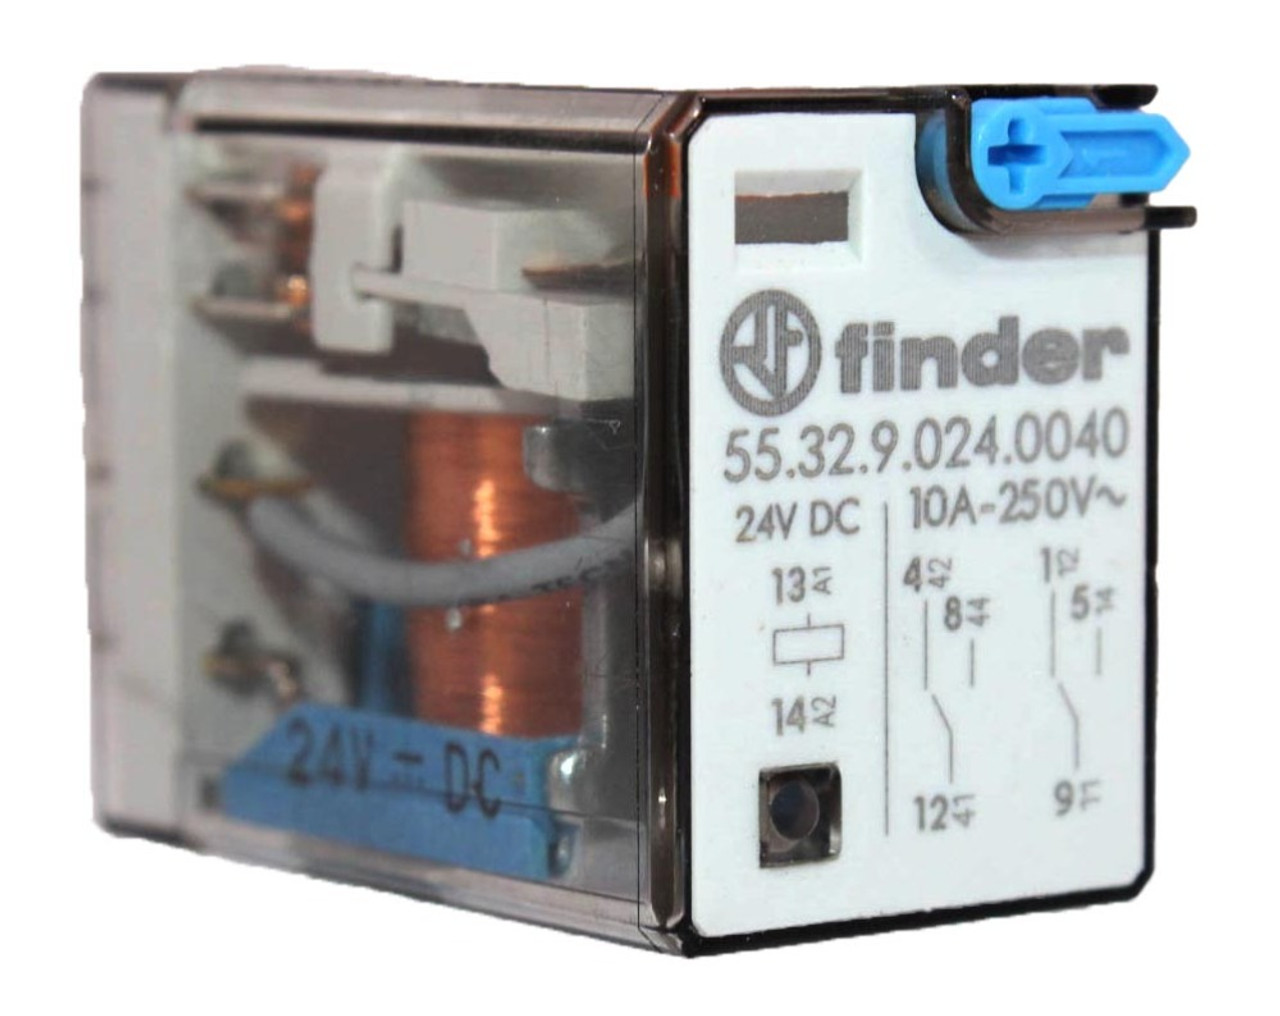 Finder 55.32.9.024.0040 Plug-In Relay DPDT 10A 250V 8 Pin Coil 24VDC